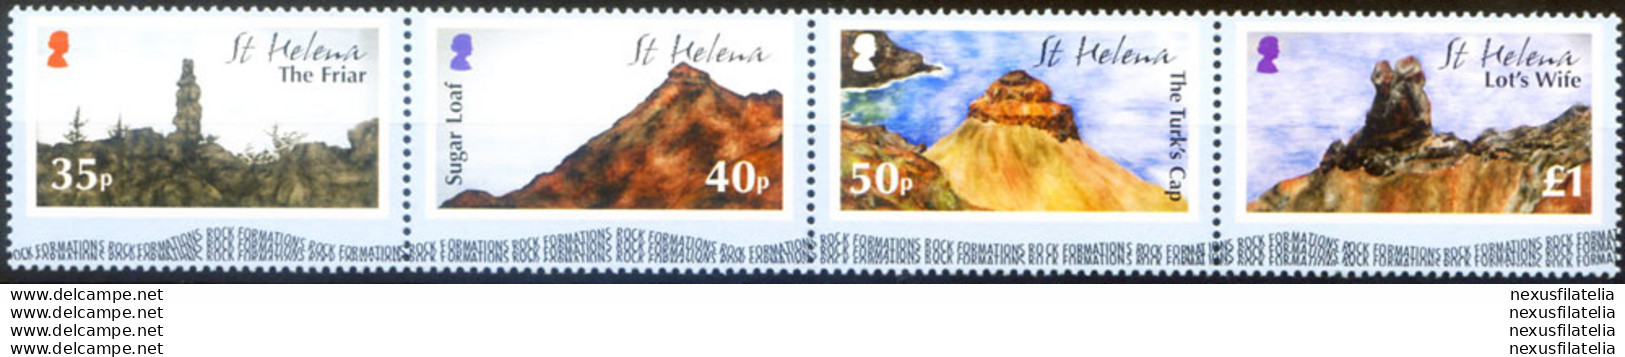 Formazioni Rocciose 2005. - Sainte-Hélène